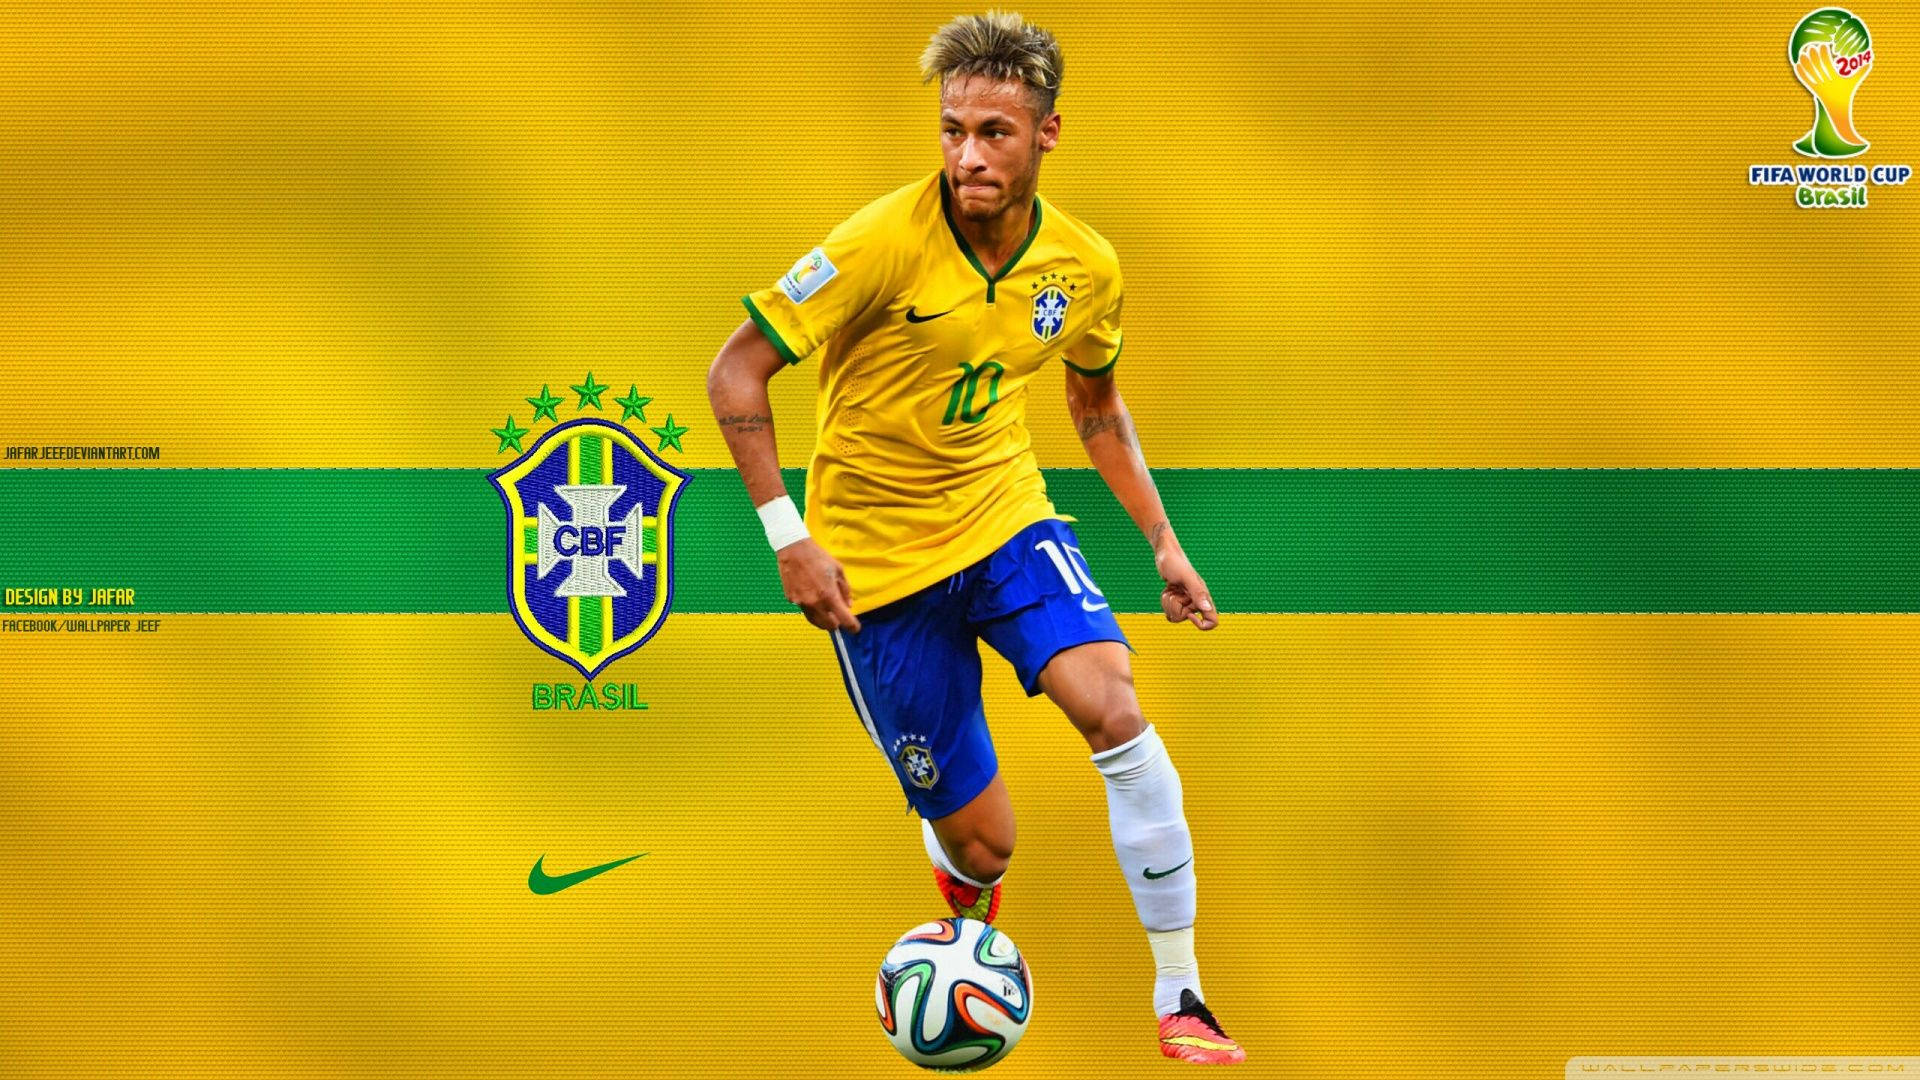 Neymar Jr For Brazil Background